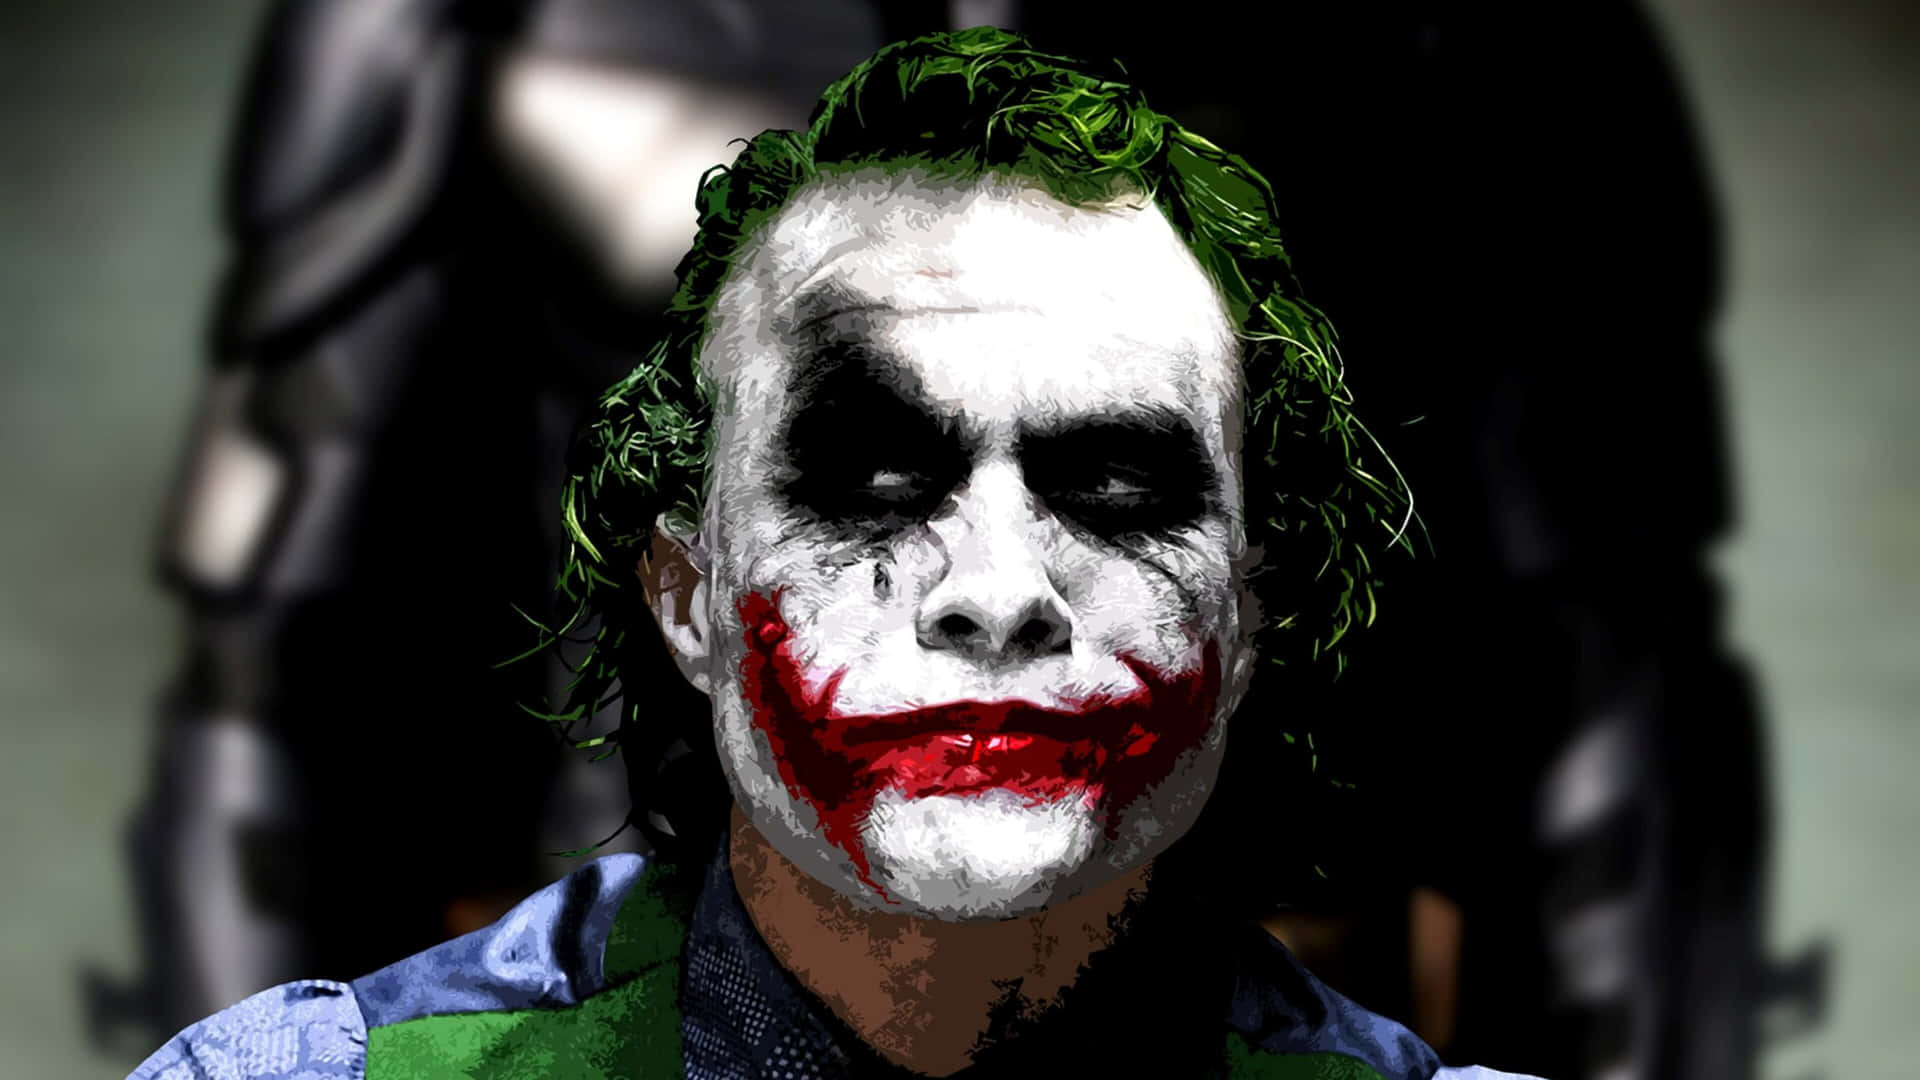 Batmanthe Dark Knight Joker I 4k Ultra Hd. Wallpaper